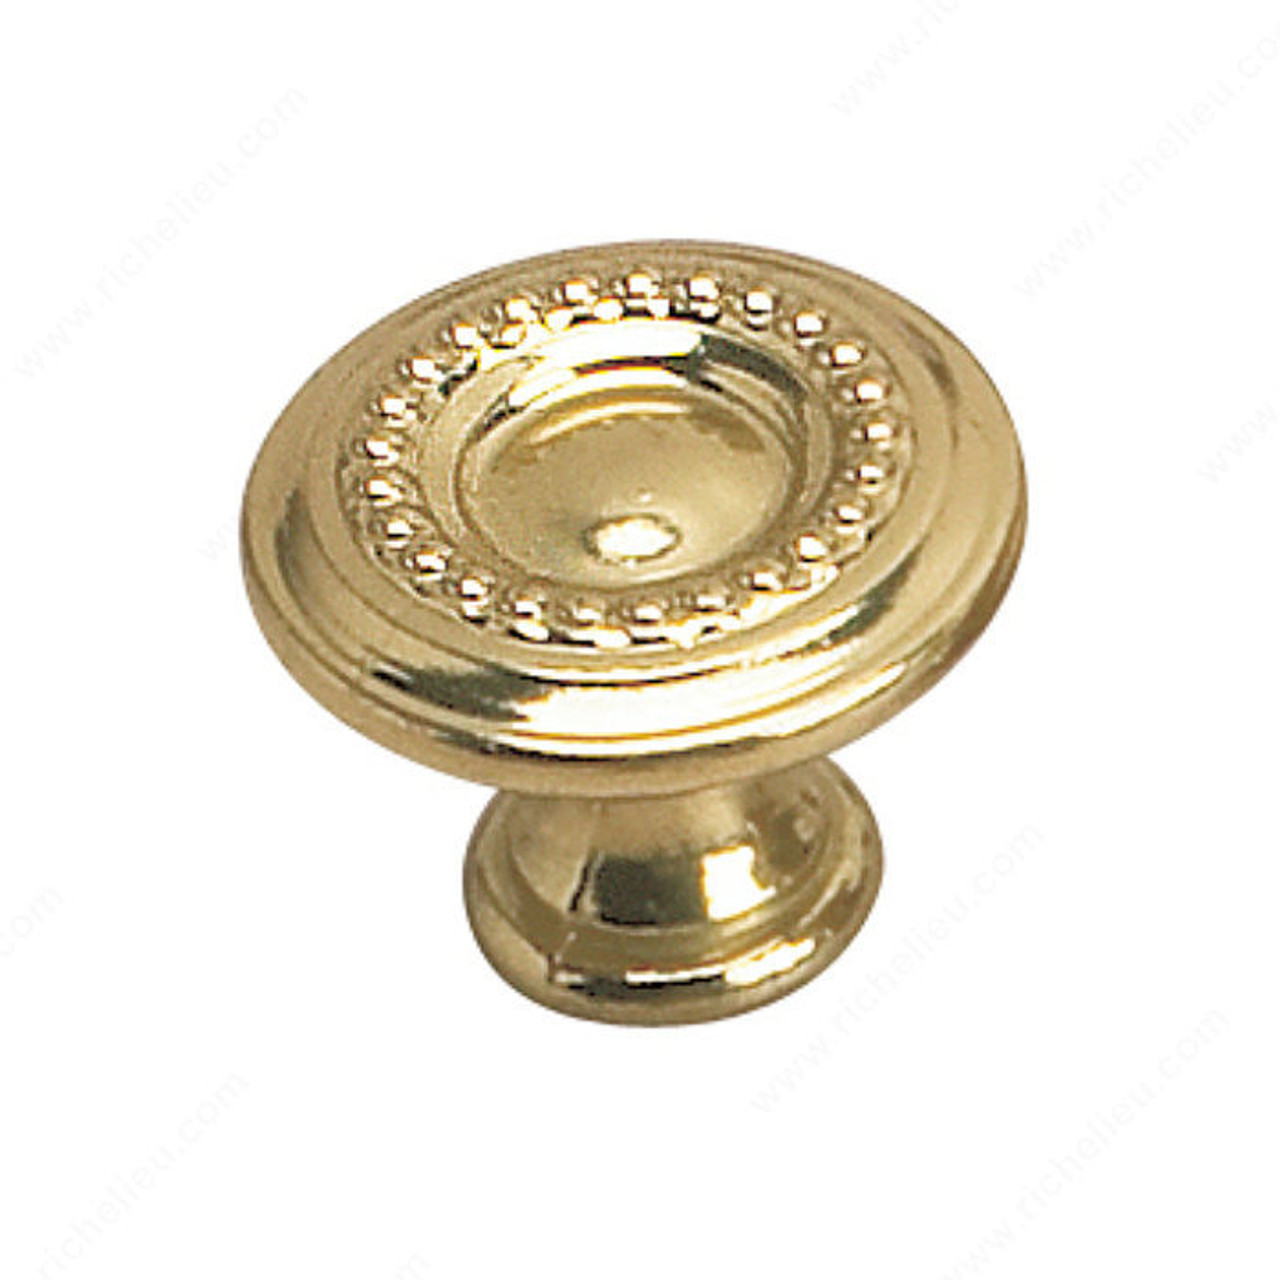 Traditional Brass Knob - 2440, Finish Oxidized Brass, Diameter